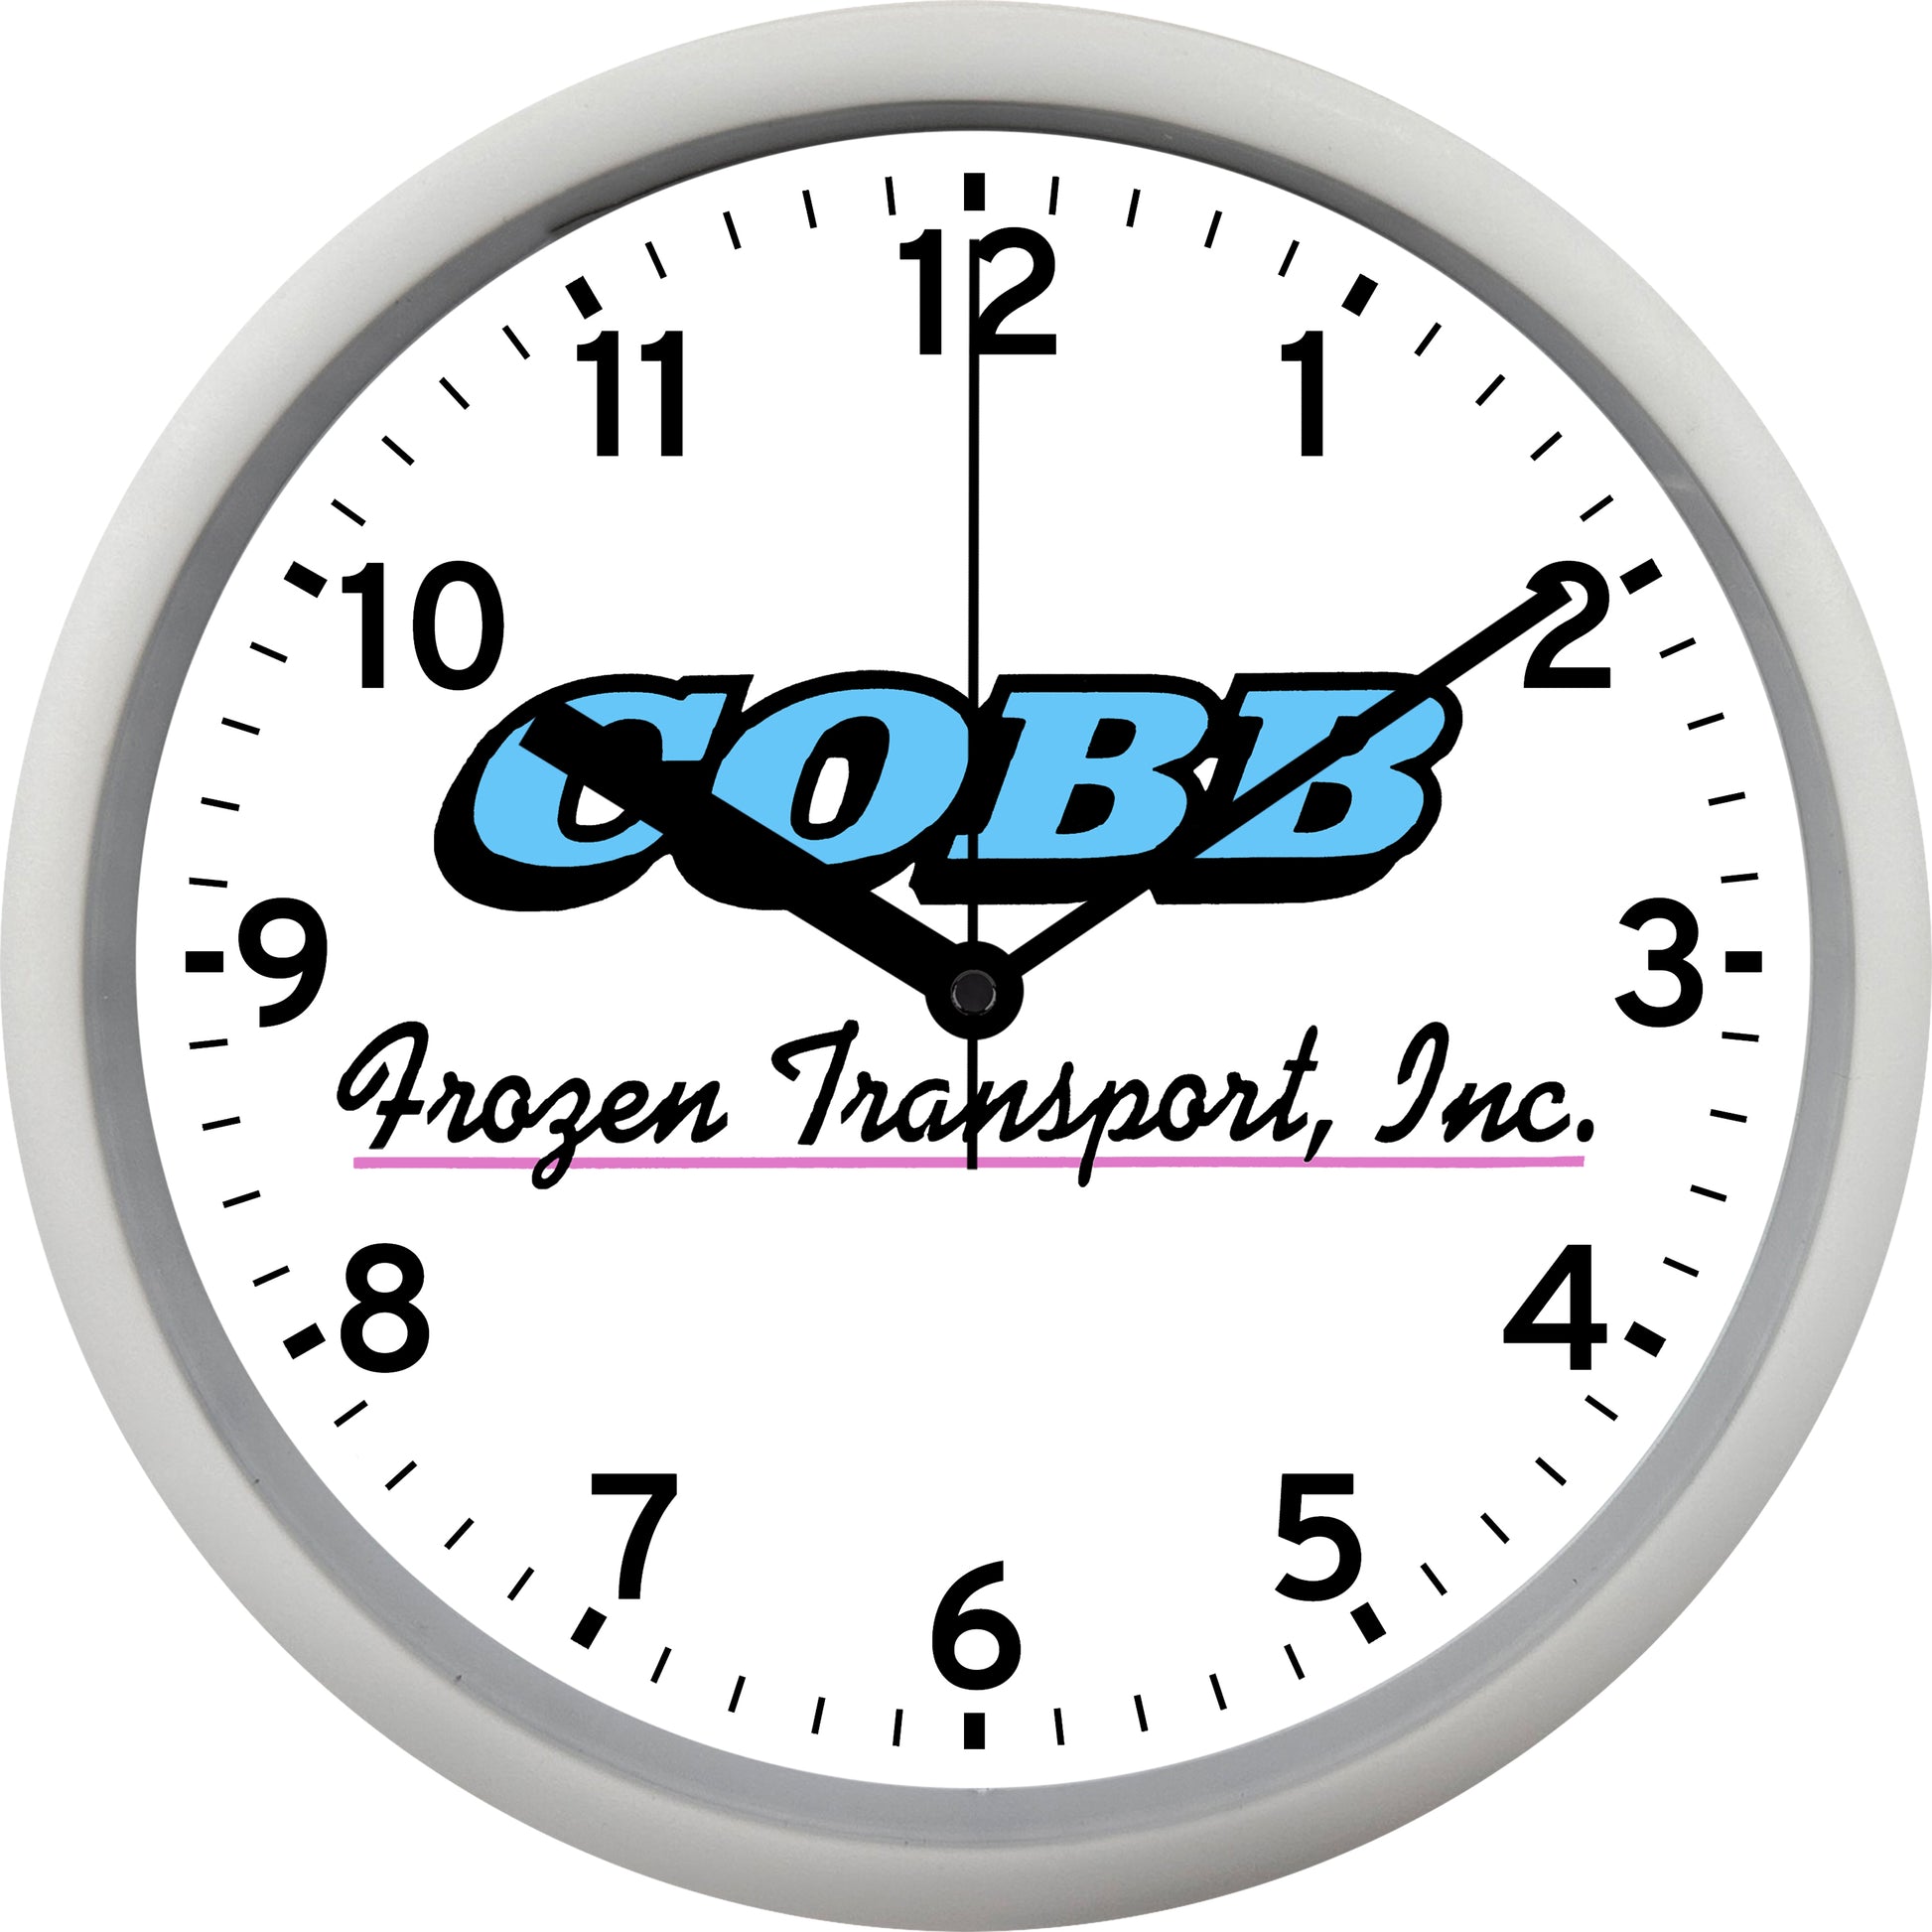 Cobb Frozen Transport, Inc. Wall Clock